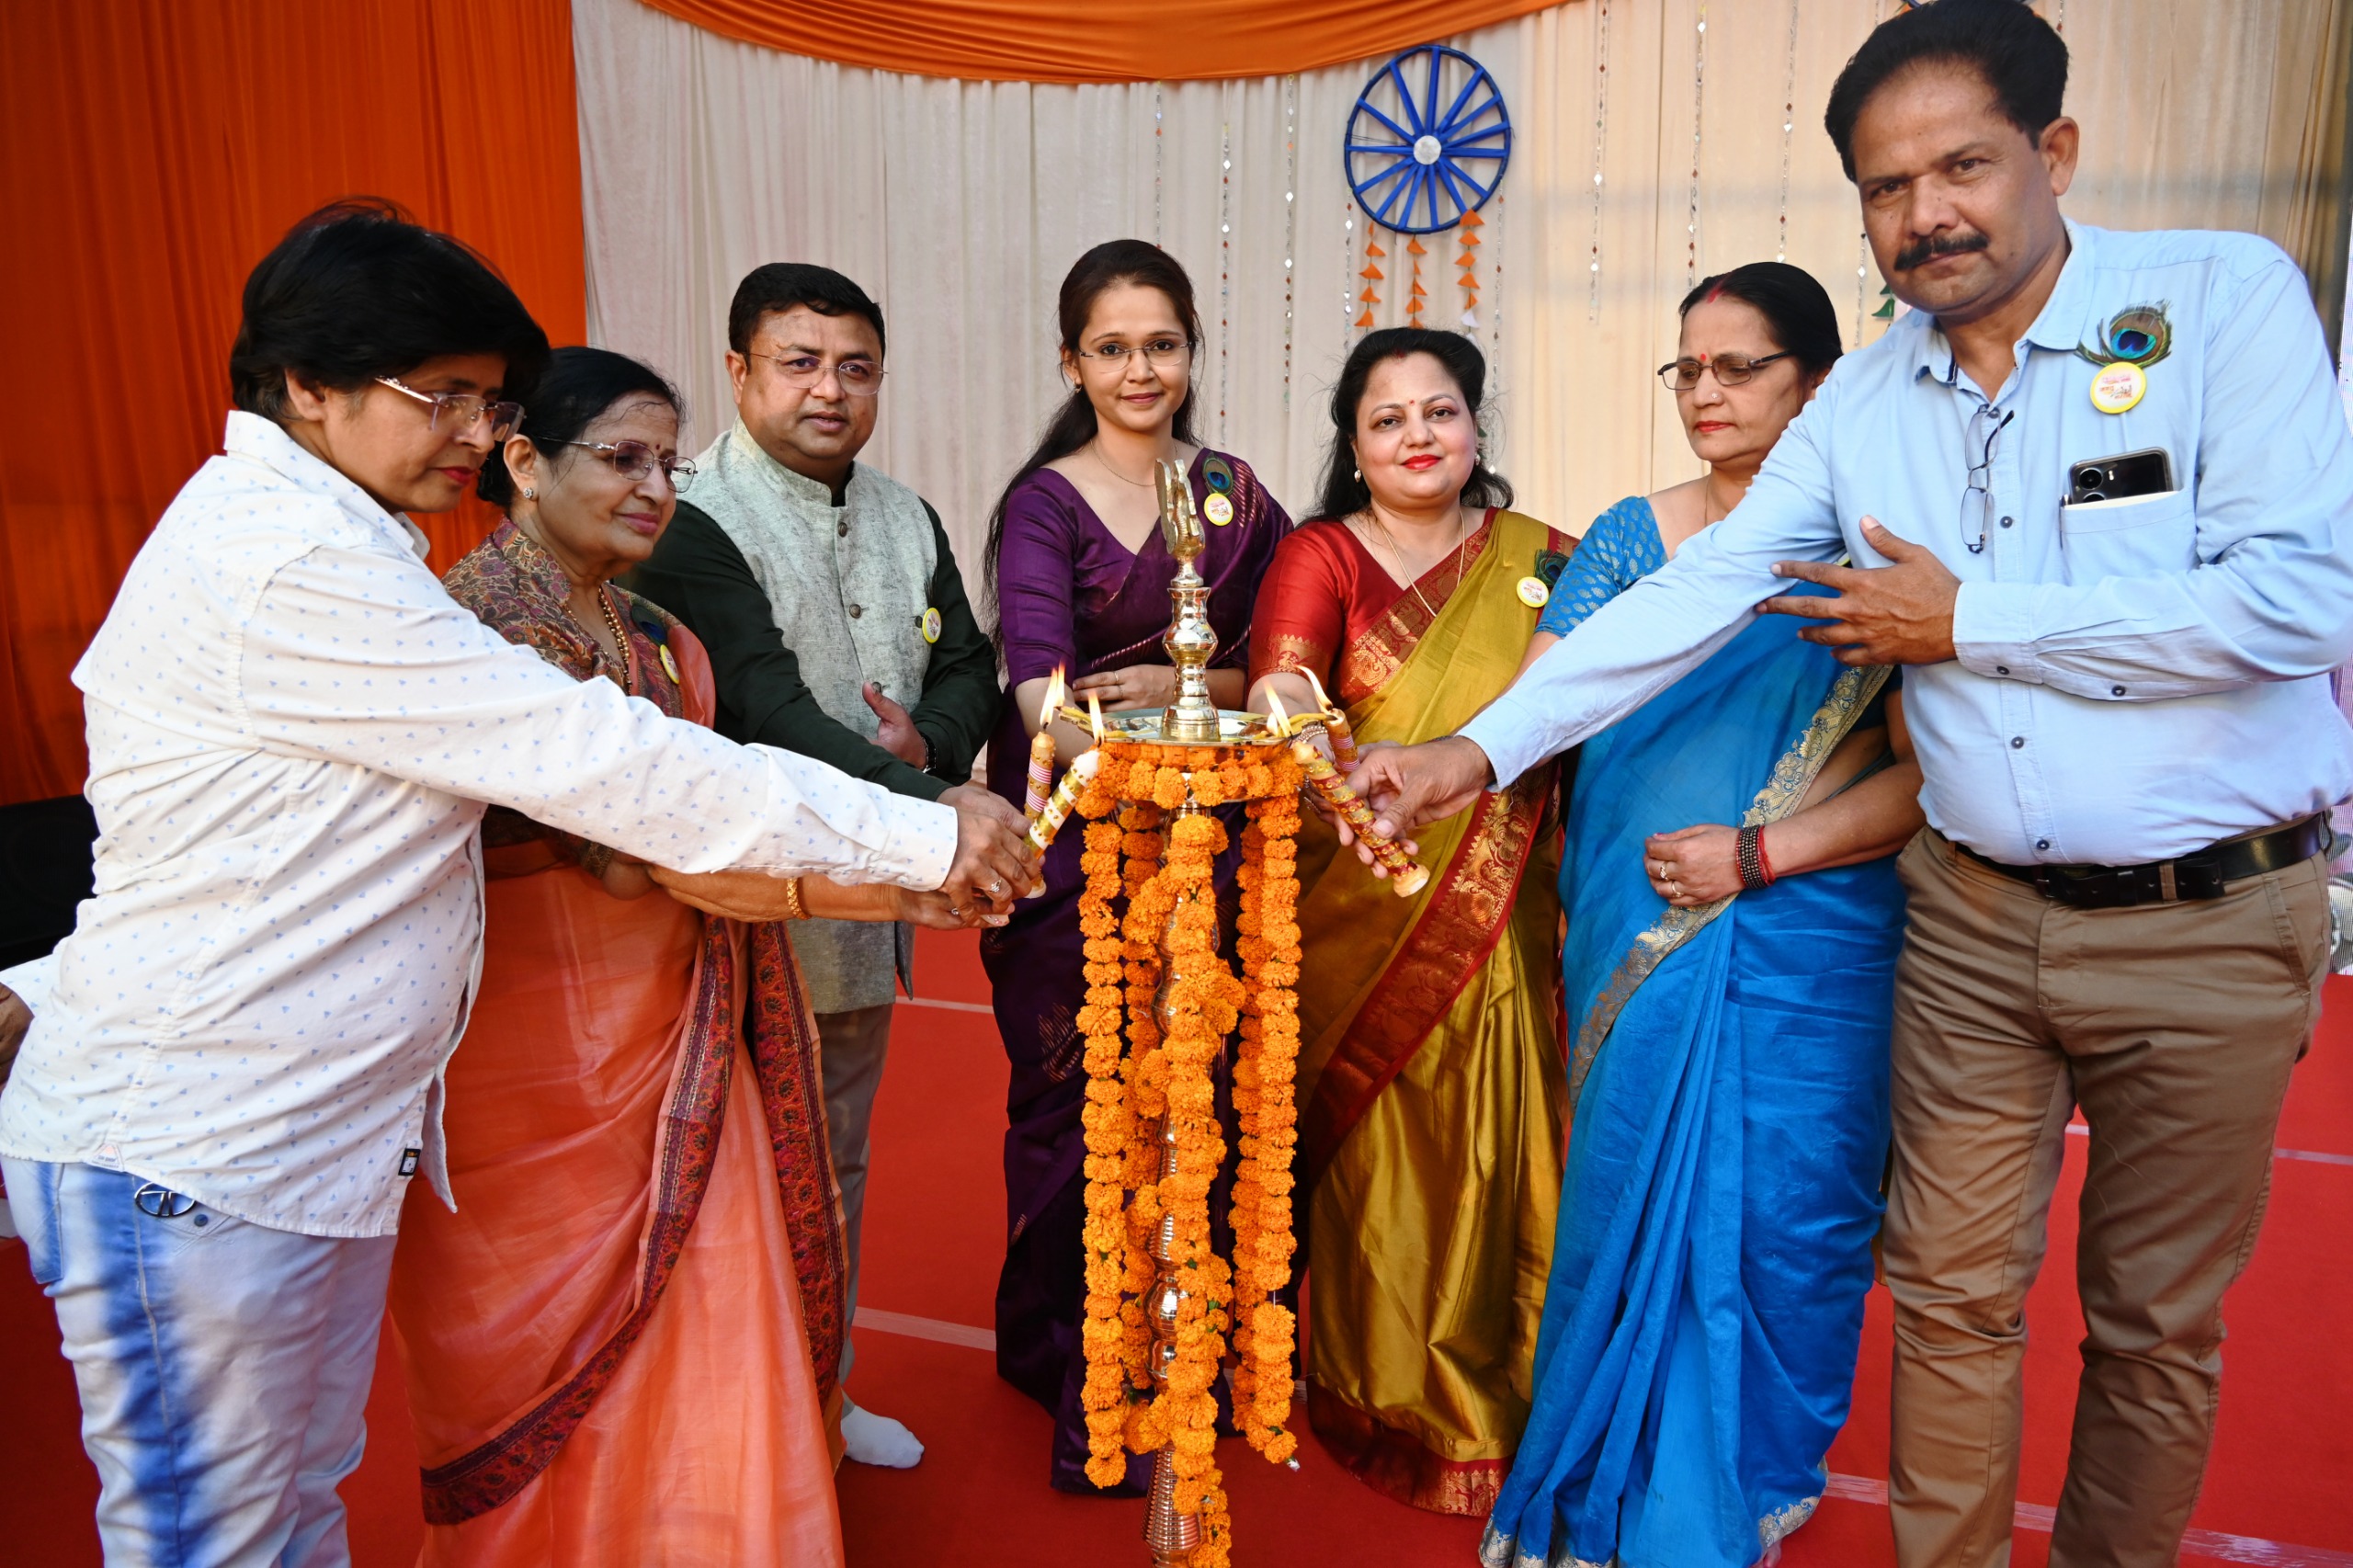 उत्तर प्रदेश डेस्क लखनऊ ( आर एल पाण्डेय )। राजाजीपुरम स्थित सेंट जोसेफ कॉलेज ने अपना 38 वां स्थापना दिवस एवं वार्षिक समारोह अत्यंत धूमधाम से एक से एक बढ़कर रंगारंग कार्यक्रमों की प्रस्तुति के साथ विद्यालय की संस्थापक अध्यक्ष श्रीमती पुष्पलता अग्रवाल के आशीर्वाद से हजारों की संख्या में उपस्थित अभिभावकों एवं अध्यापक अध्यापिकाओं के साथ मिलकर मनाया।